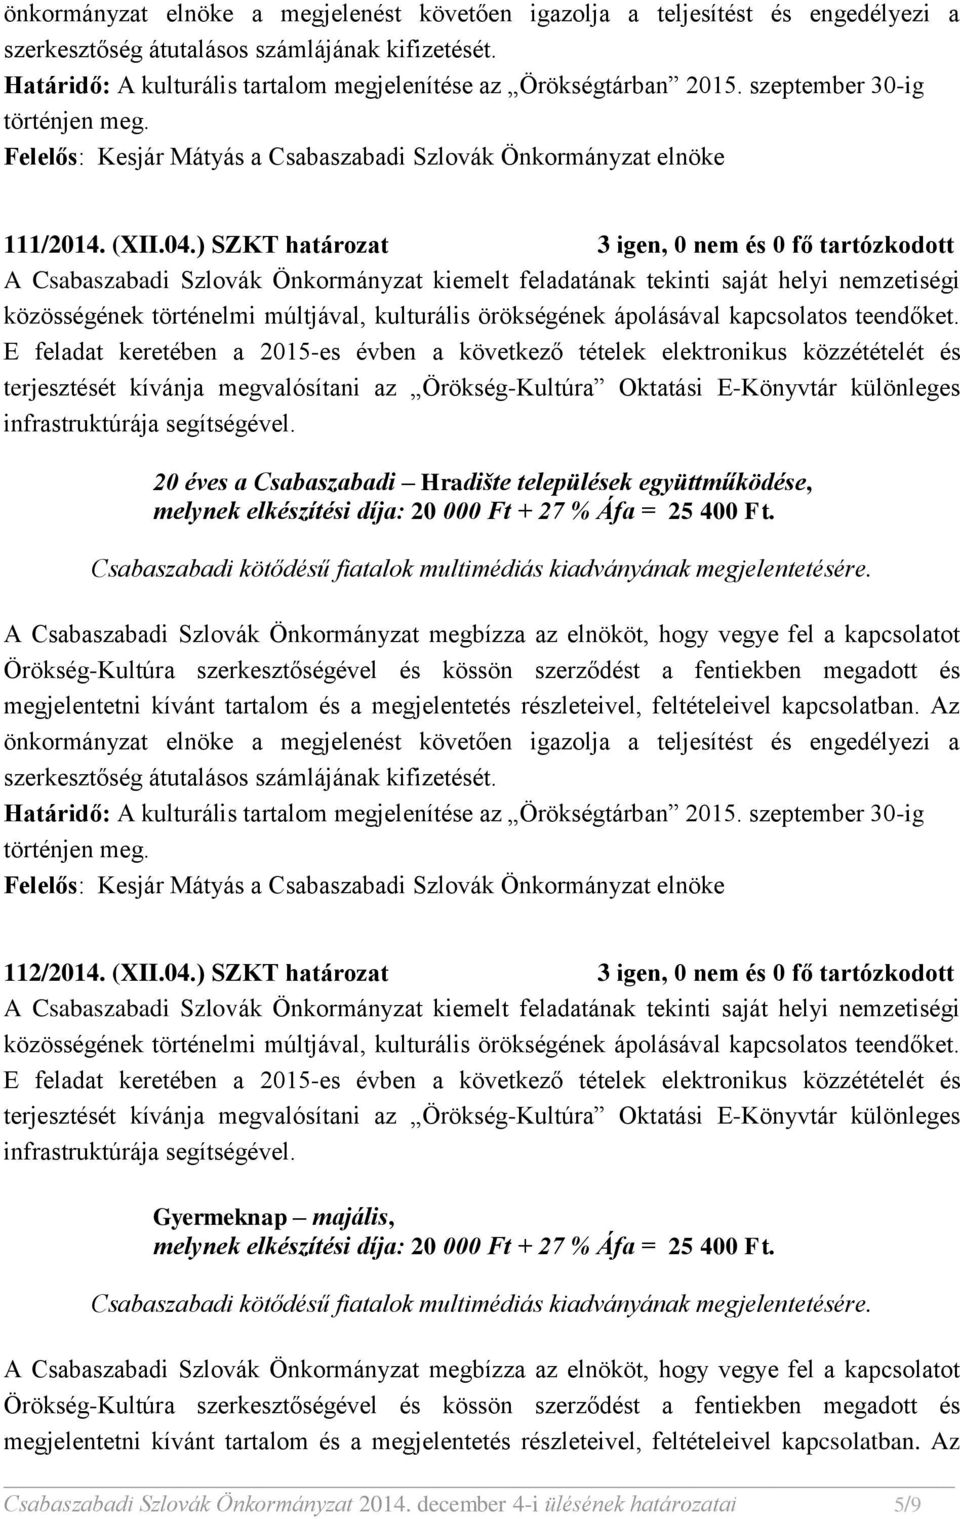 Hradište települések együttműködése, 112/2014. (XII.04.